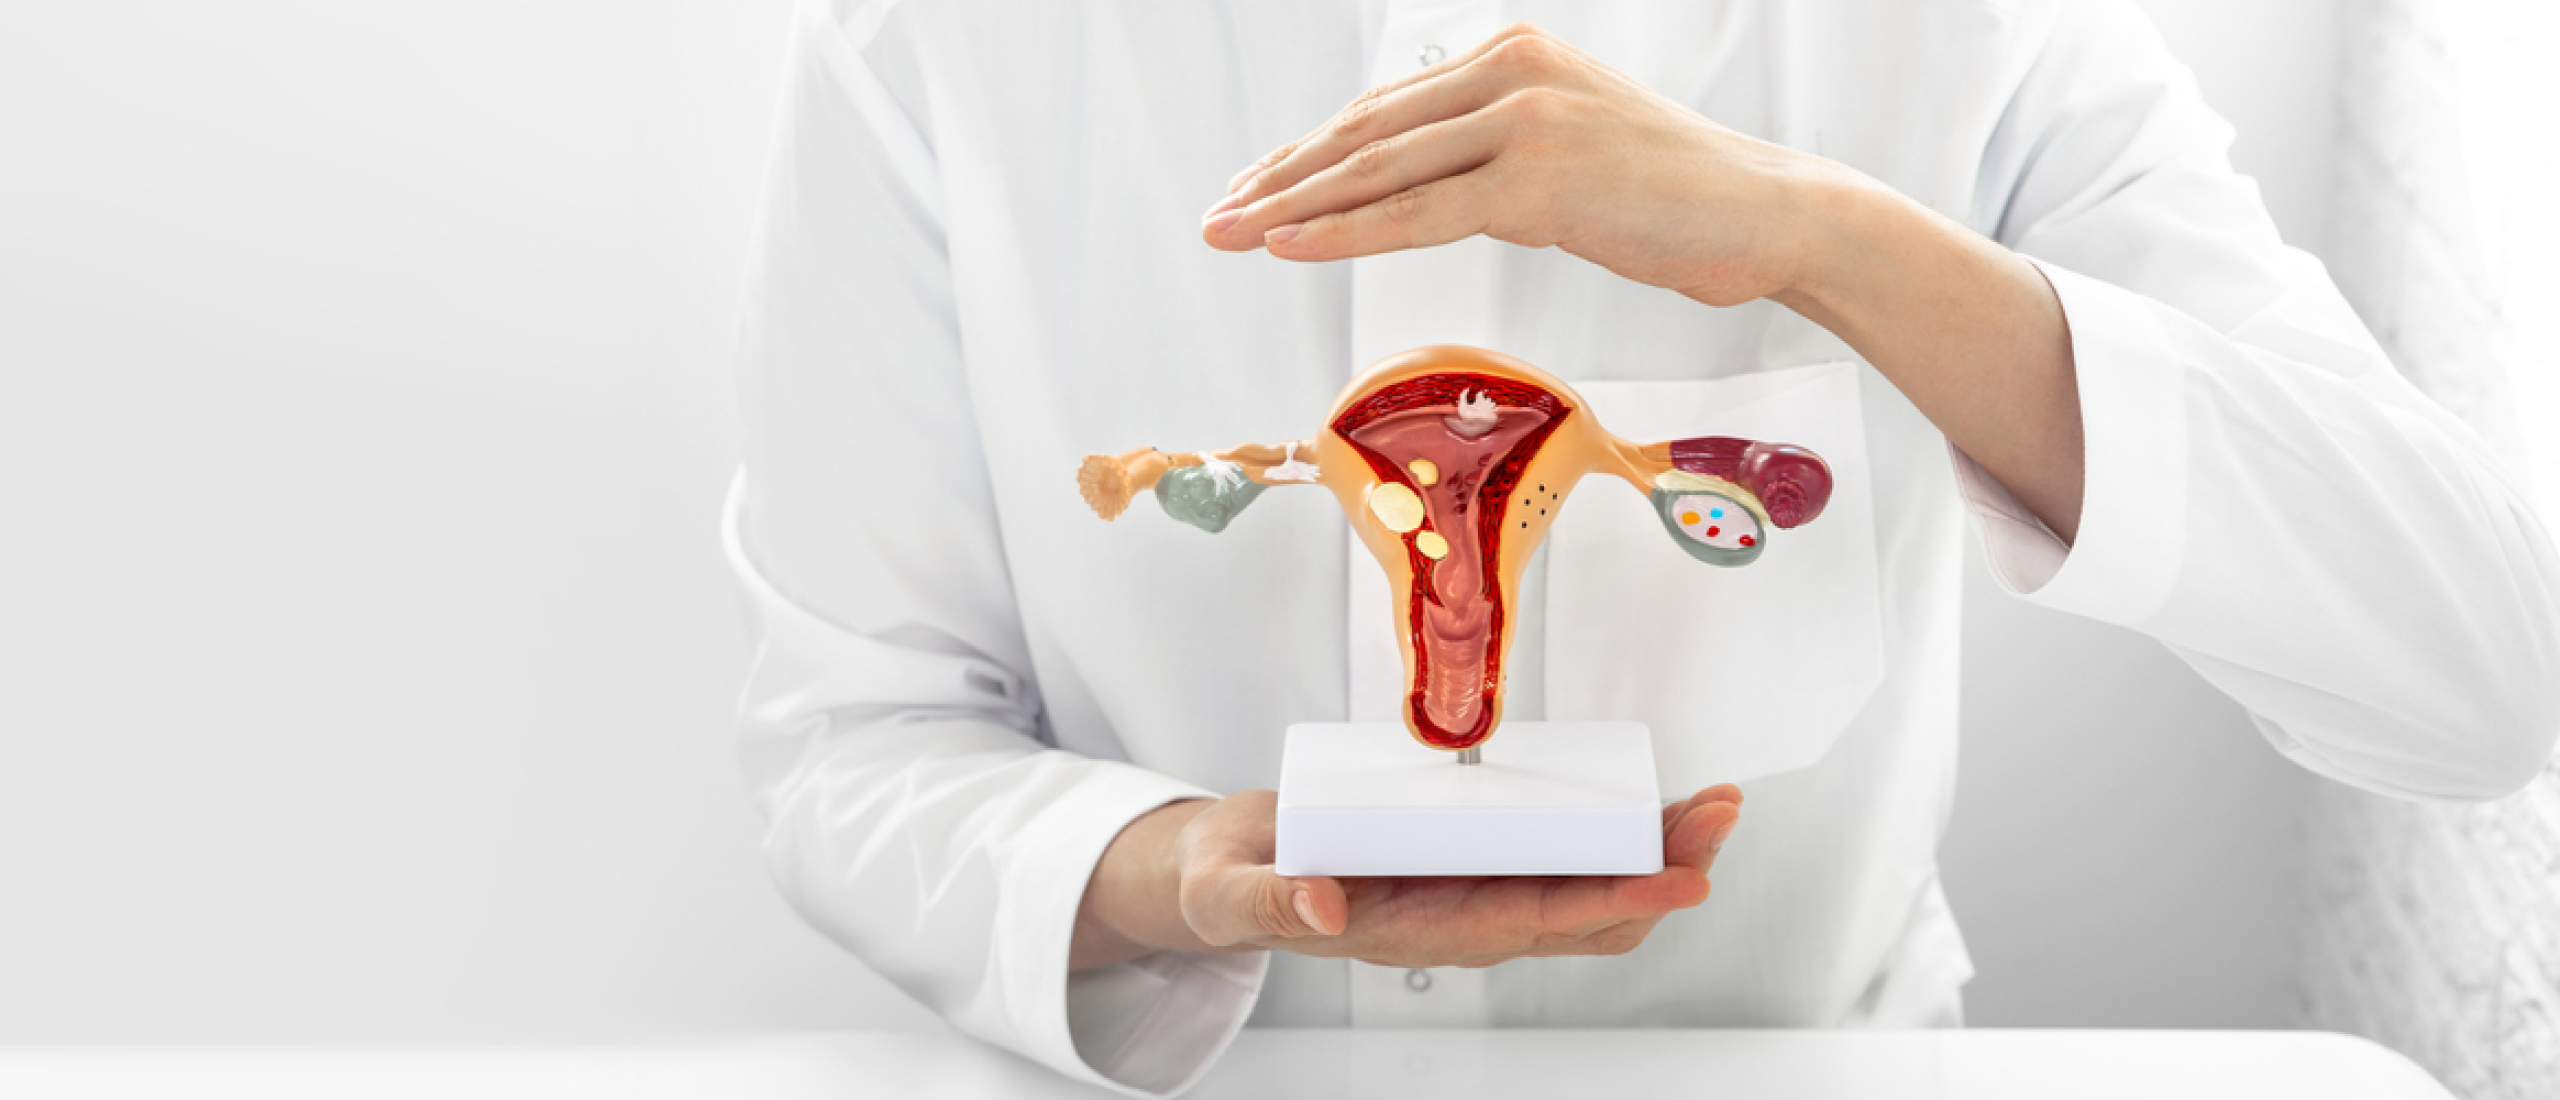 Zeldzame ziekte: aangeboren afwijking aan de uterus (baarmoeder)